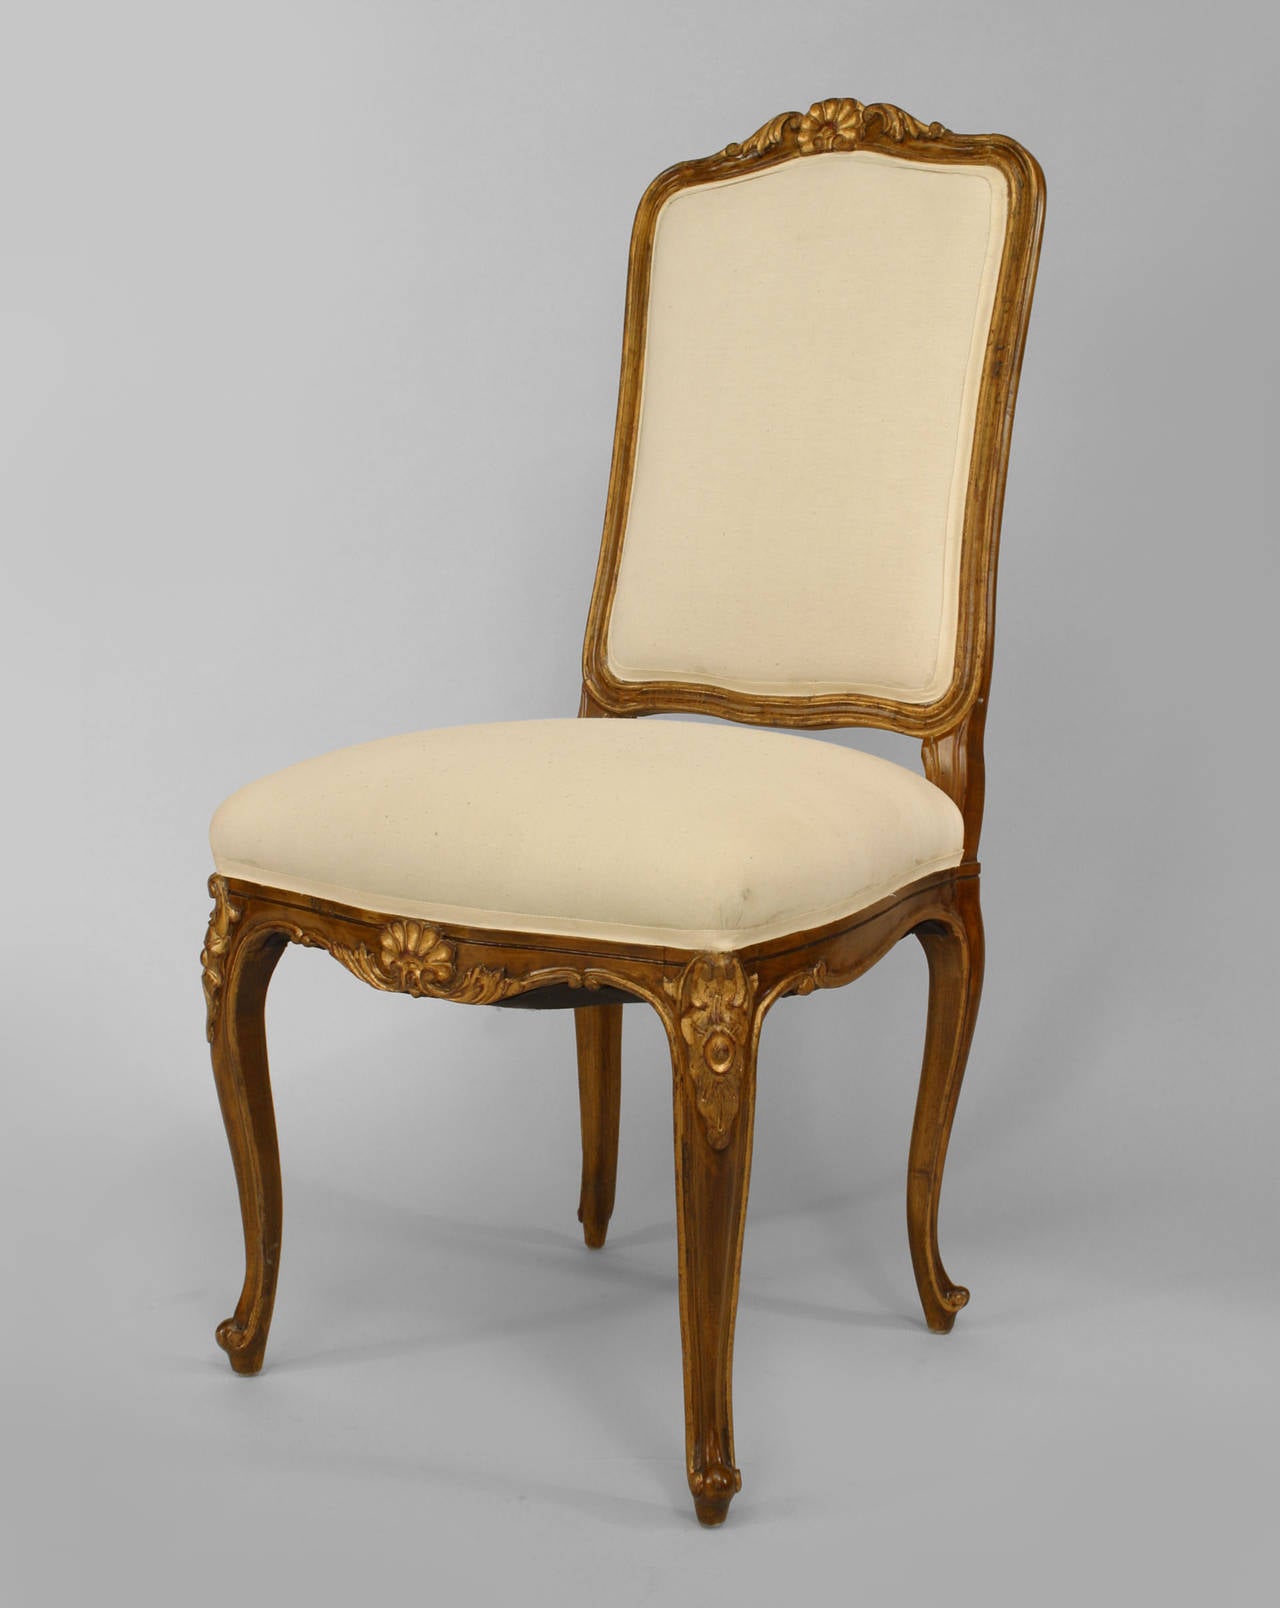 6 Stühle im französischen Louis XV-Stil (19./20. Jh.) aus Nussbaumholz und goldfarben lackiert mit hoher Rückenlehne, muschelgeschnitzter Rückenlehne und weiß gepolstertem Sitz und Rücken.
